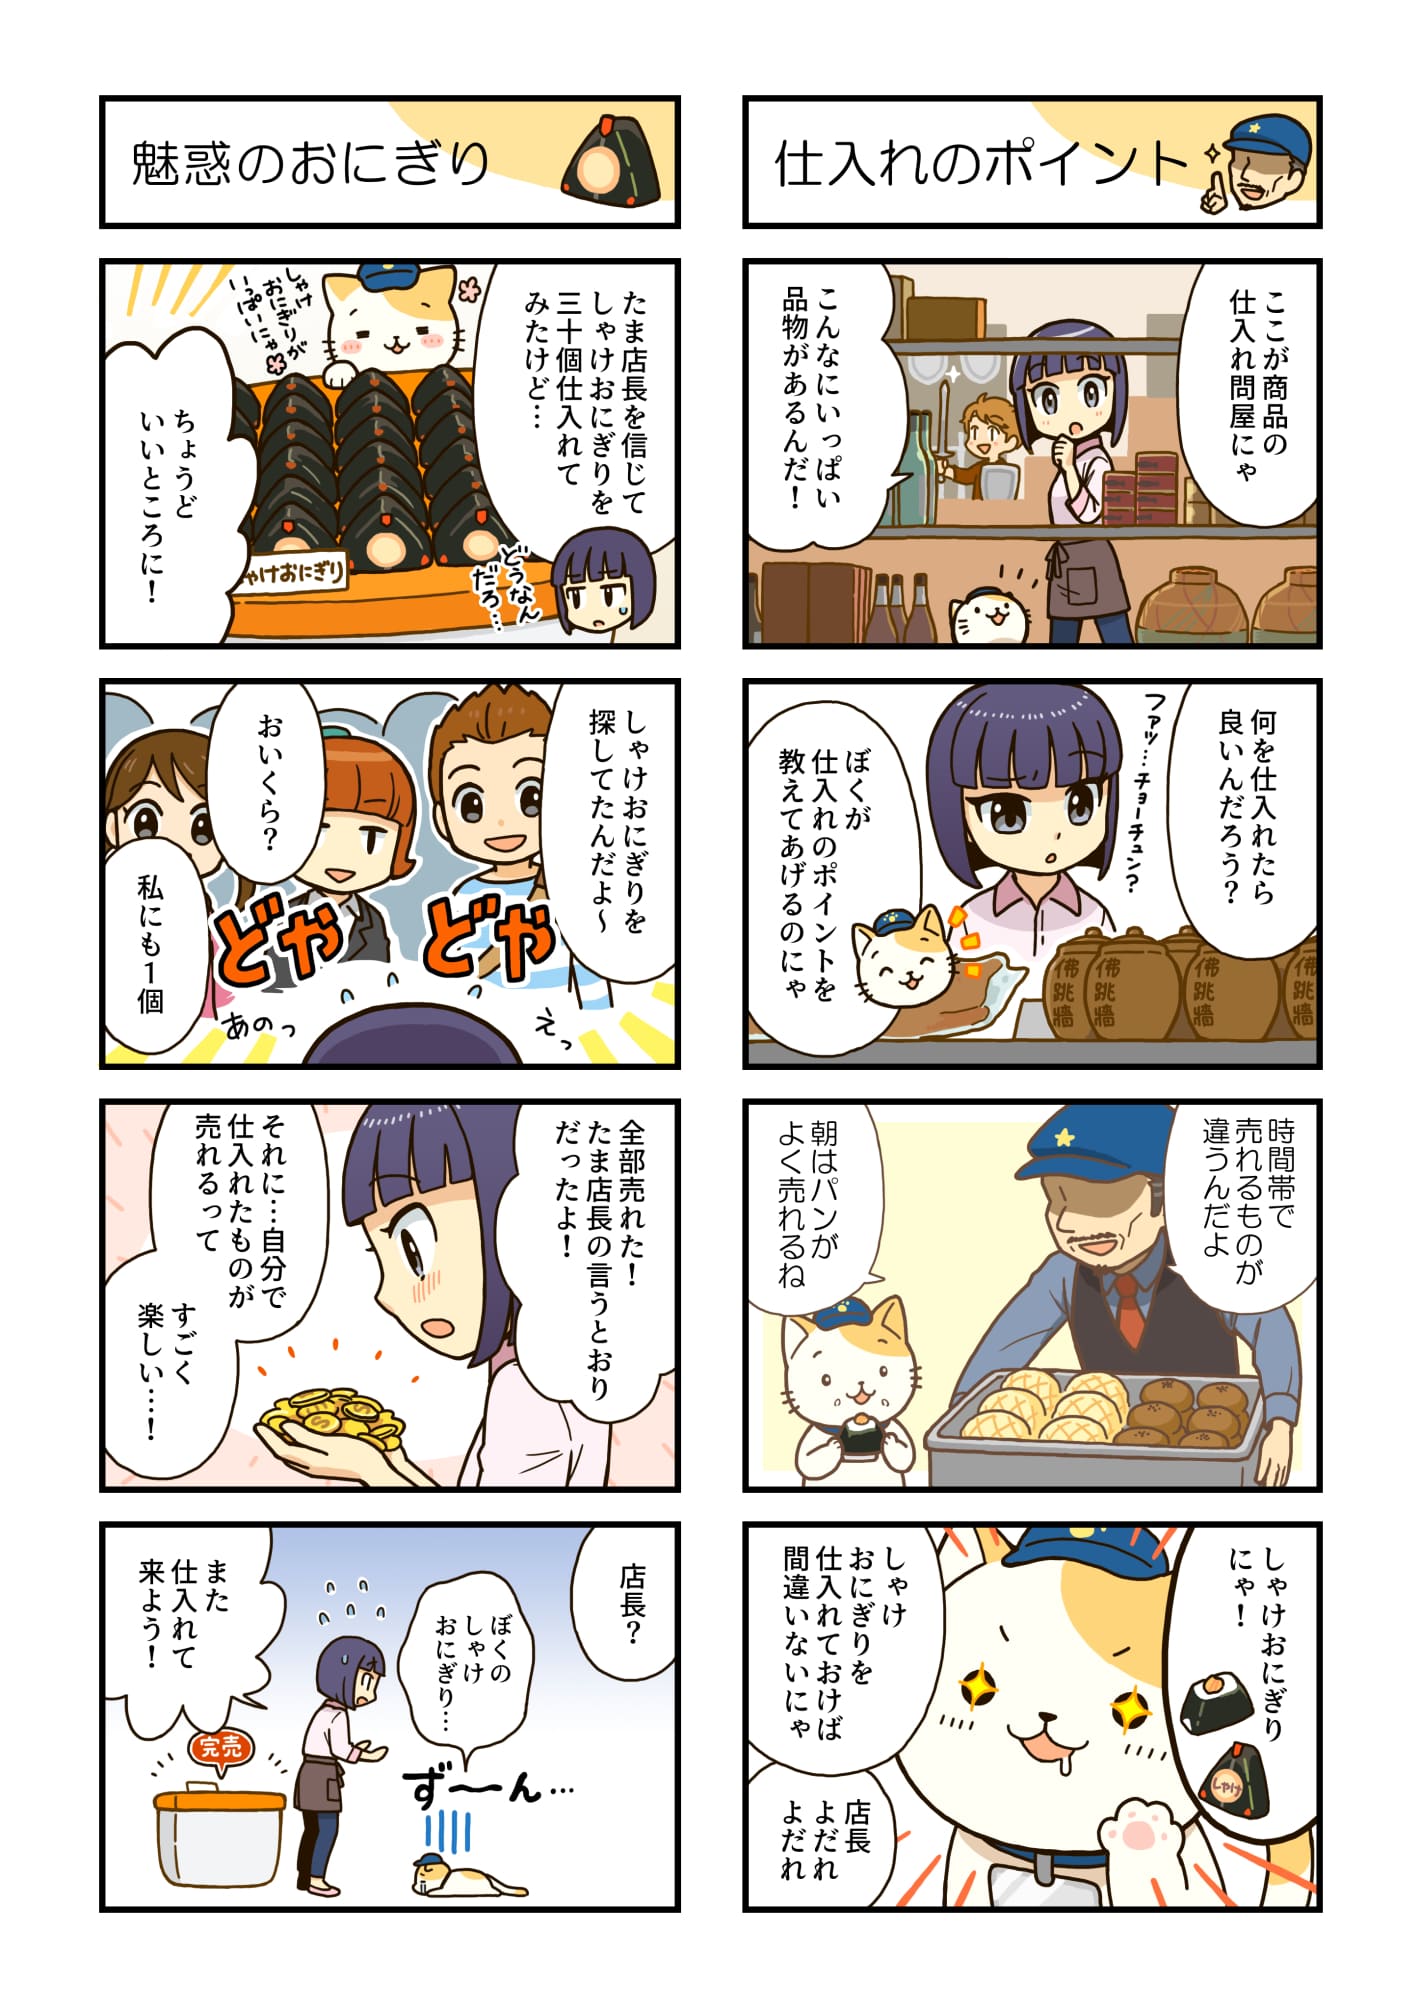 ゲームチュートリアル漫画『たま店長にお任せ』掲載サンプル3